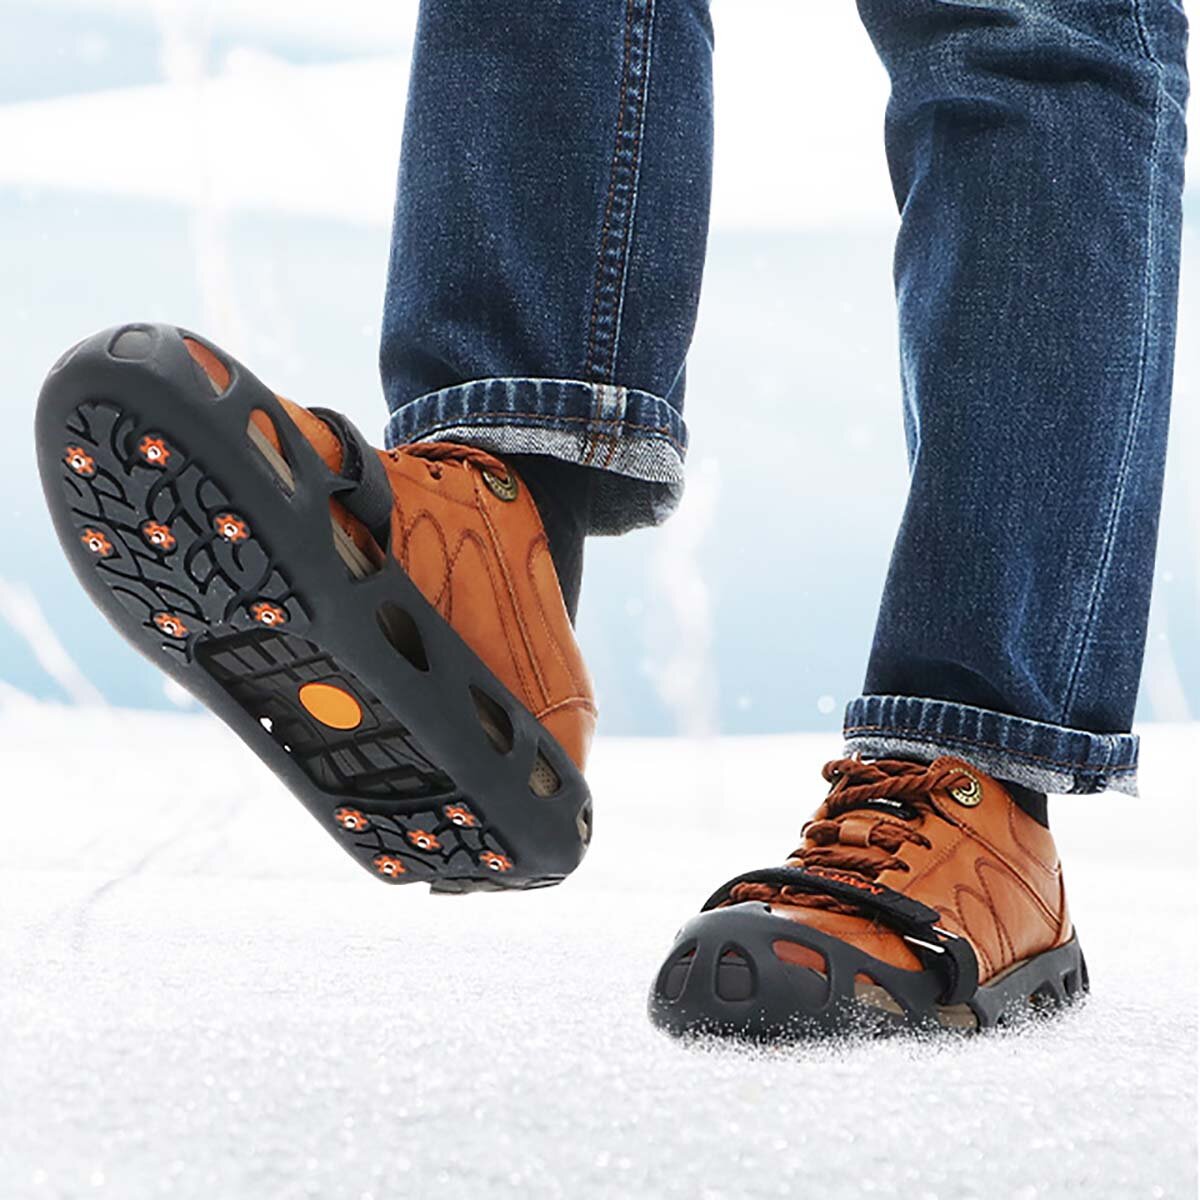 Στα 9.19 € από αποθήκη Γαλλίας | MATTC Crampons Ice Snow Traction Cleats Microspikes Ice Claws with 12 Steel Spike for Hiking Climbing Walking for Men Women